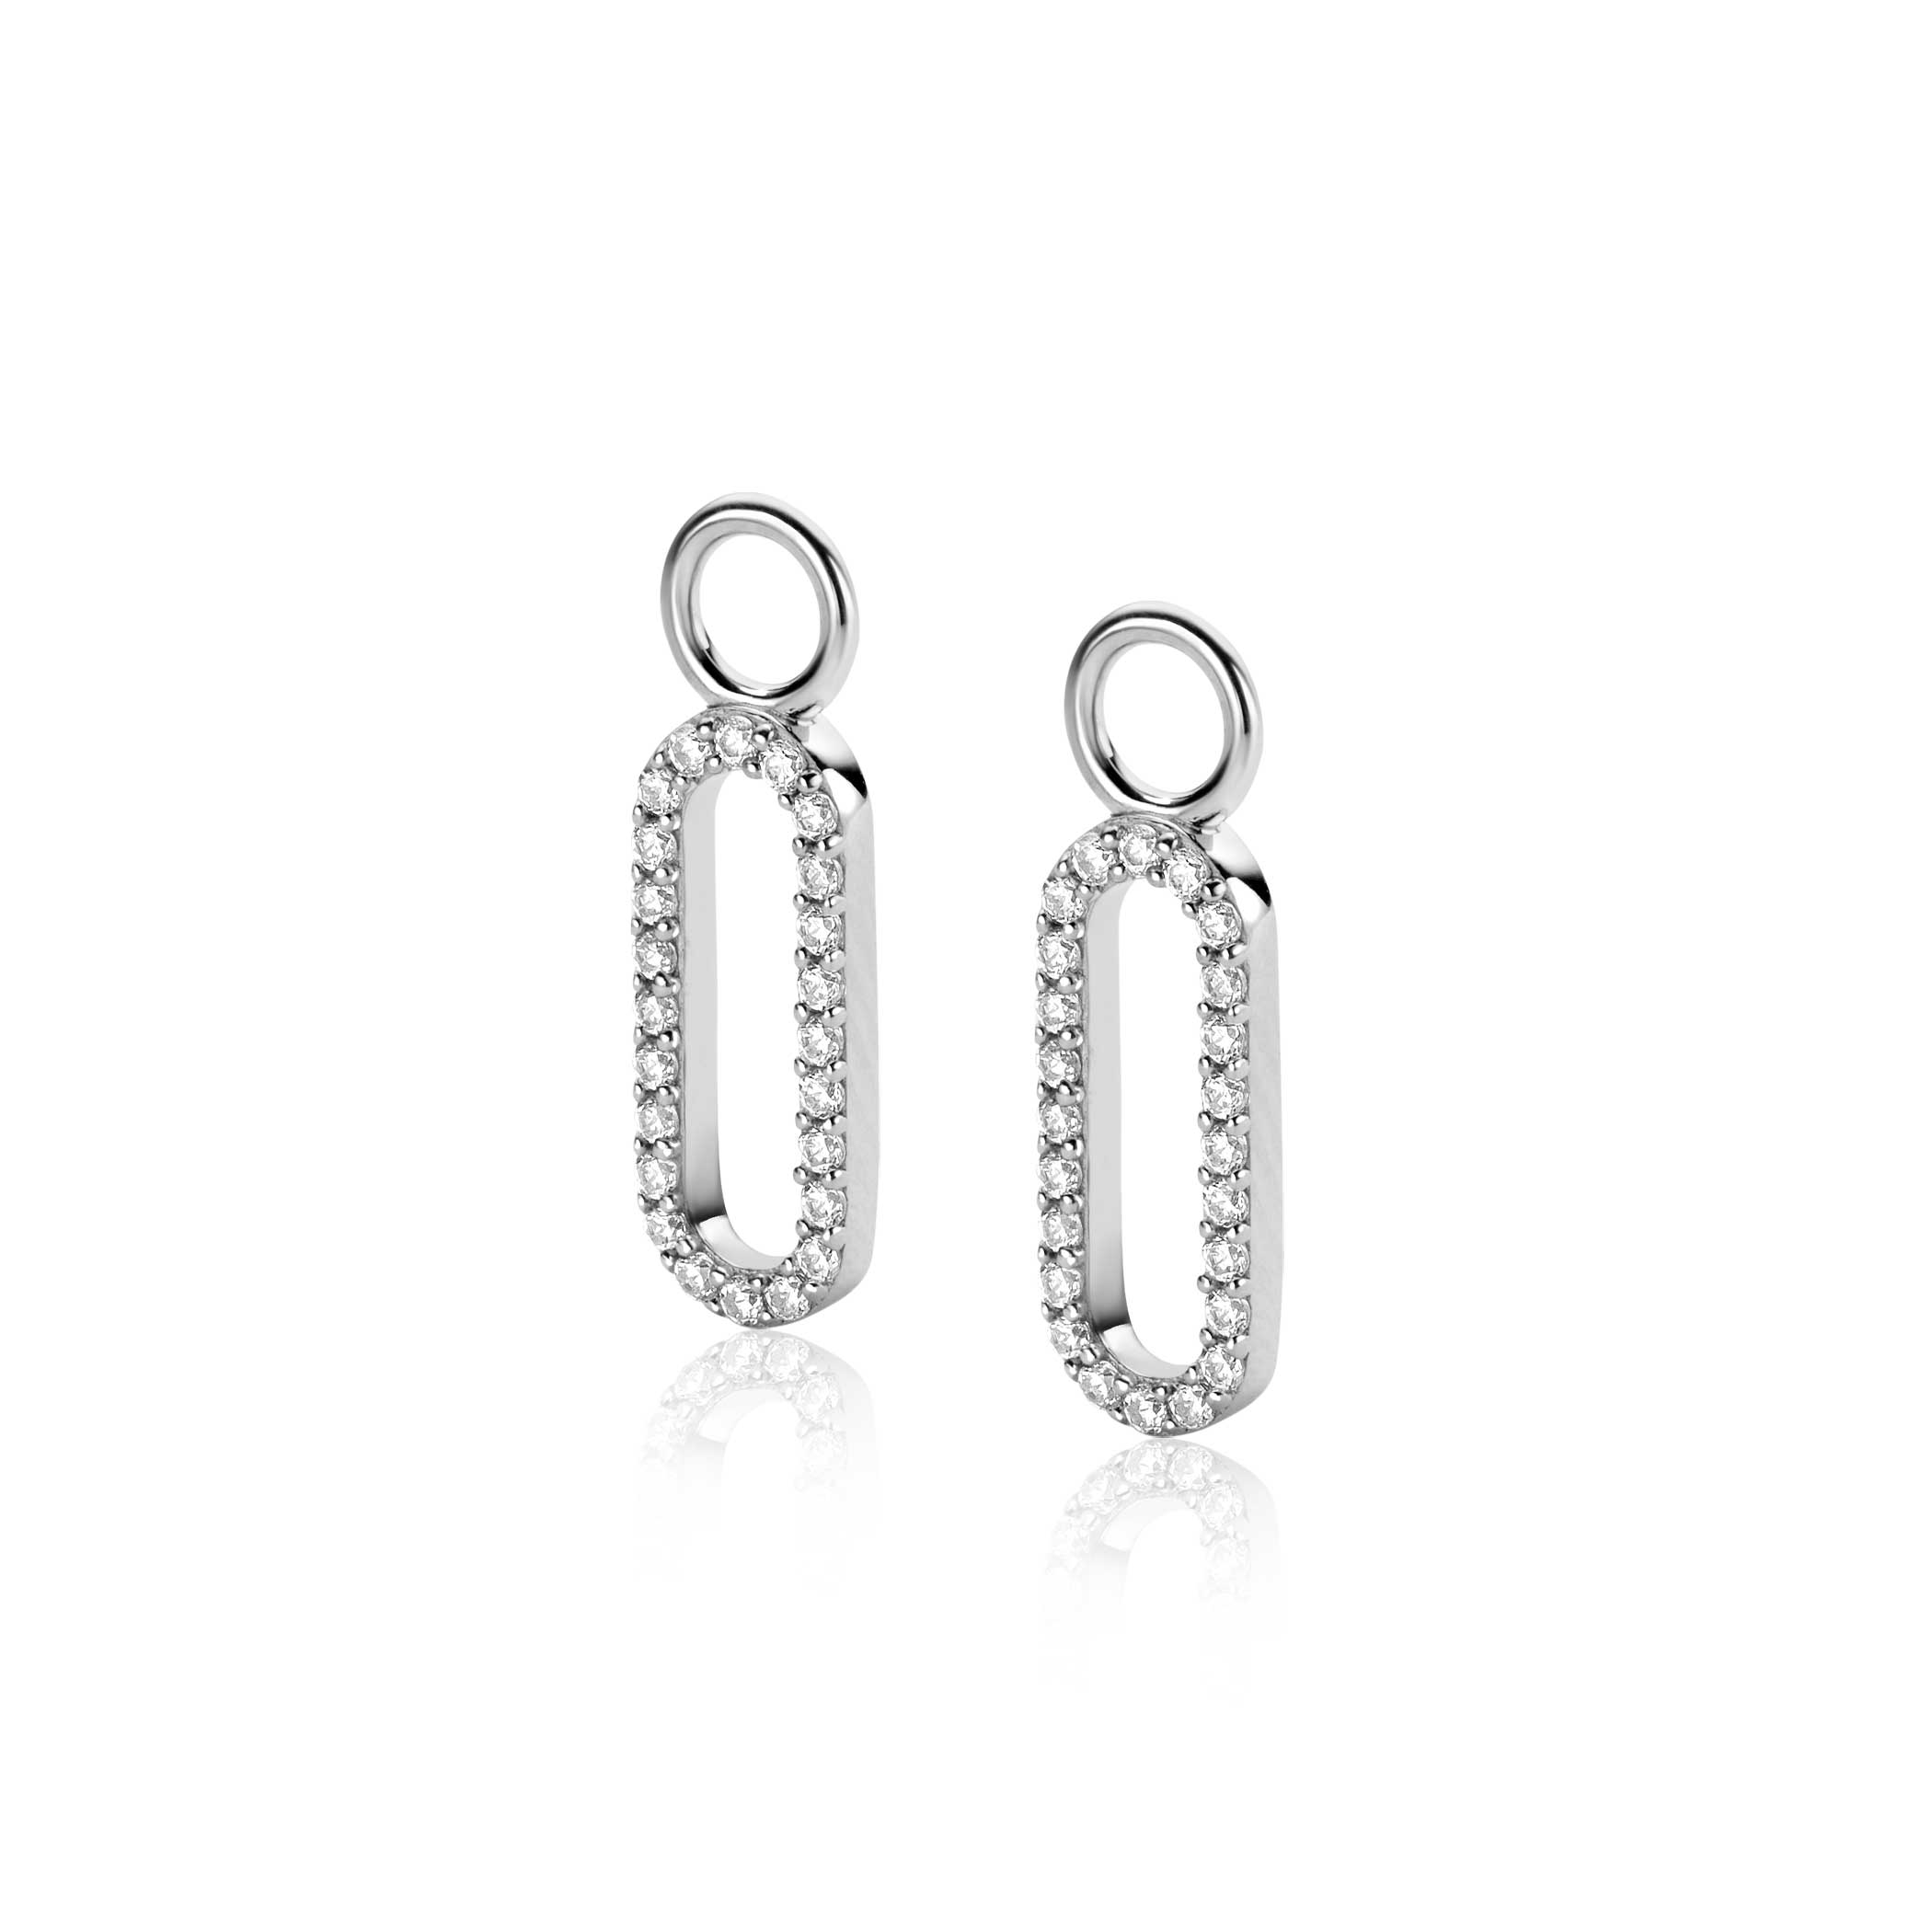 20mm ZINZI Sterling Silver Earrings Pendants Open Oval shape White Zirconias ZICH2506 (excl. hoop earrings)